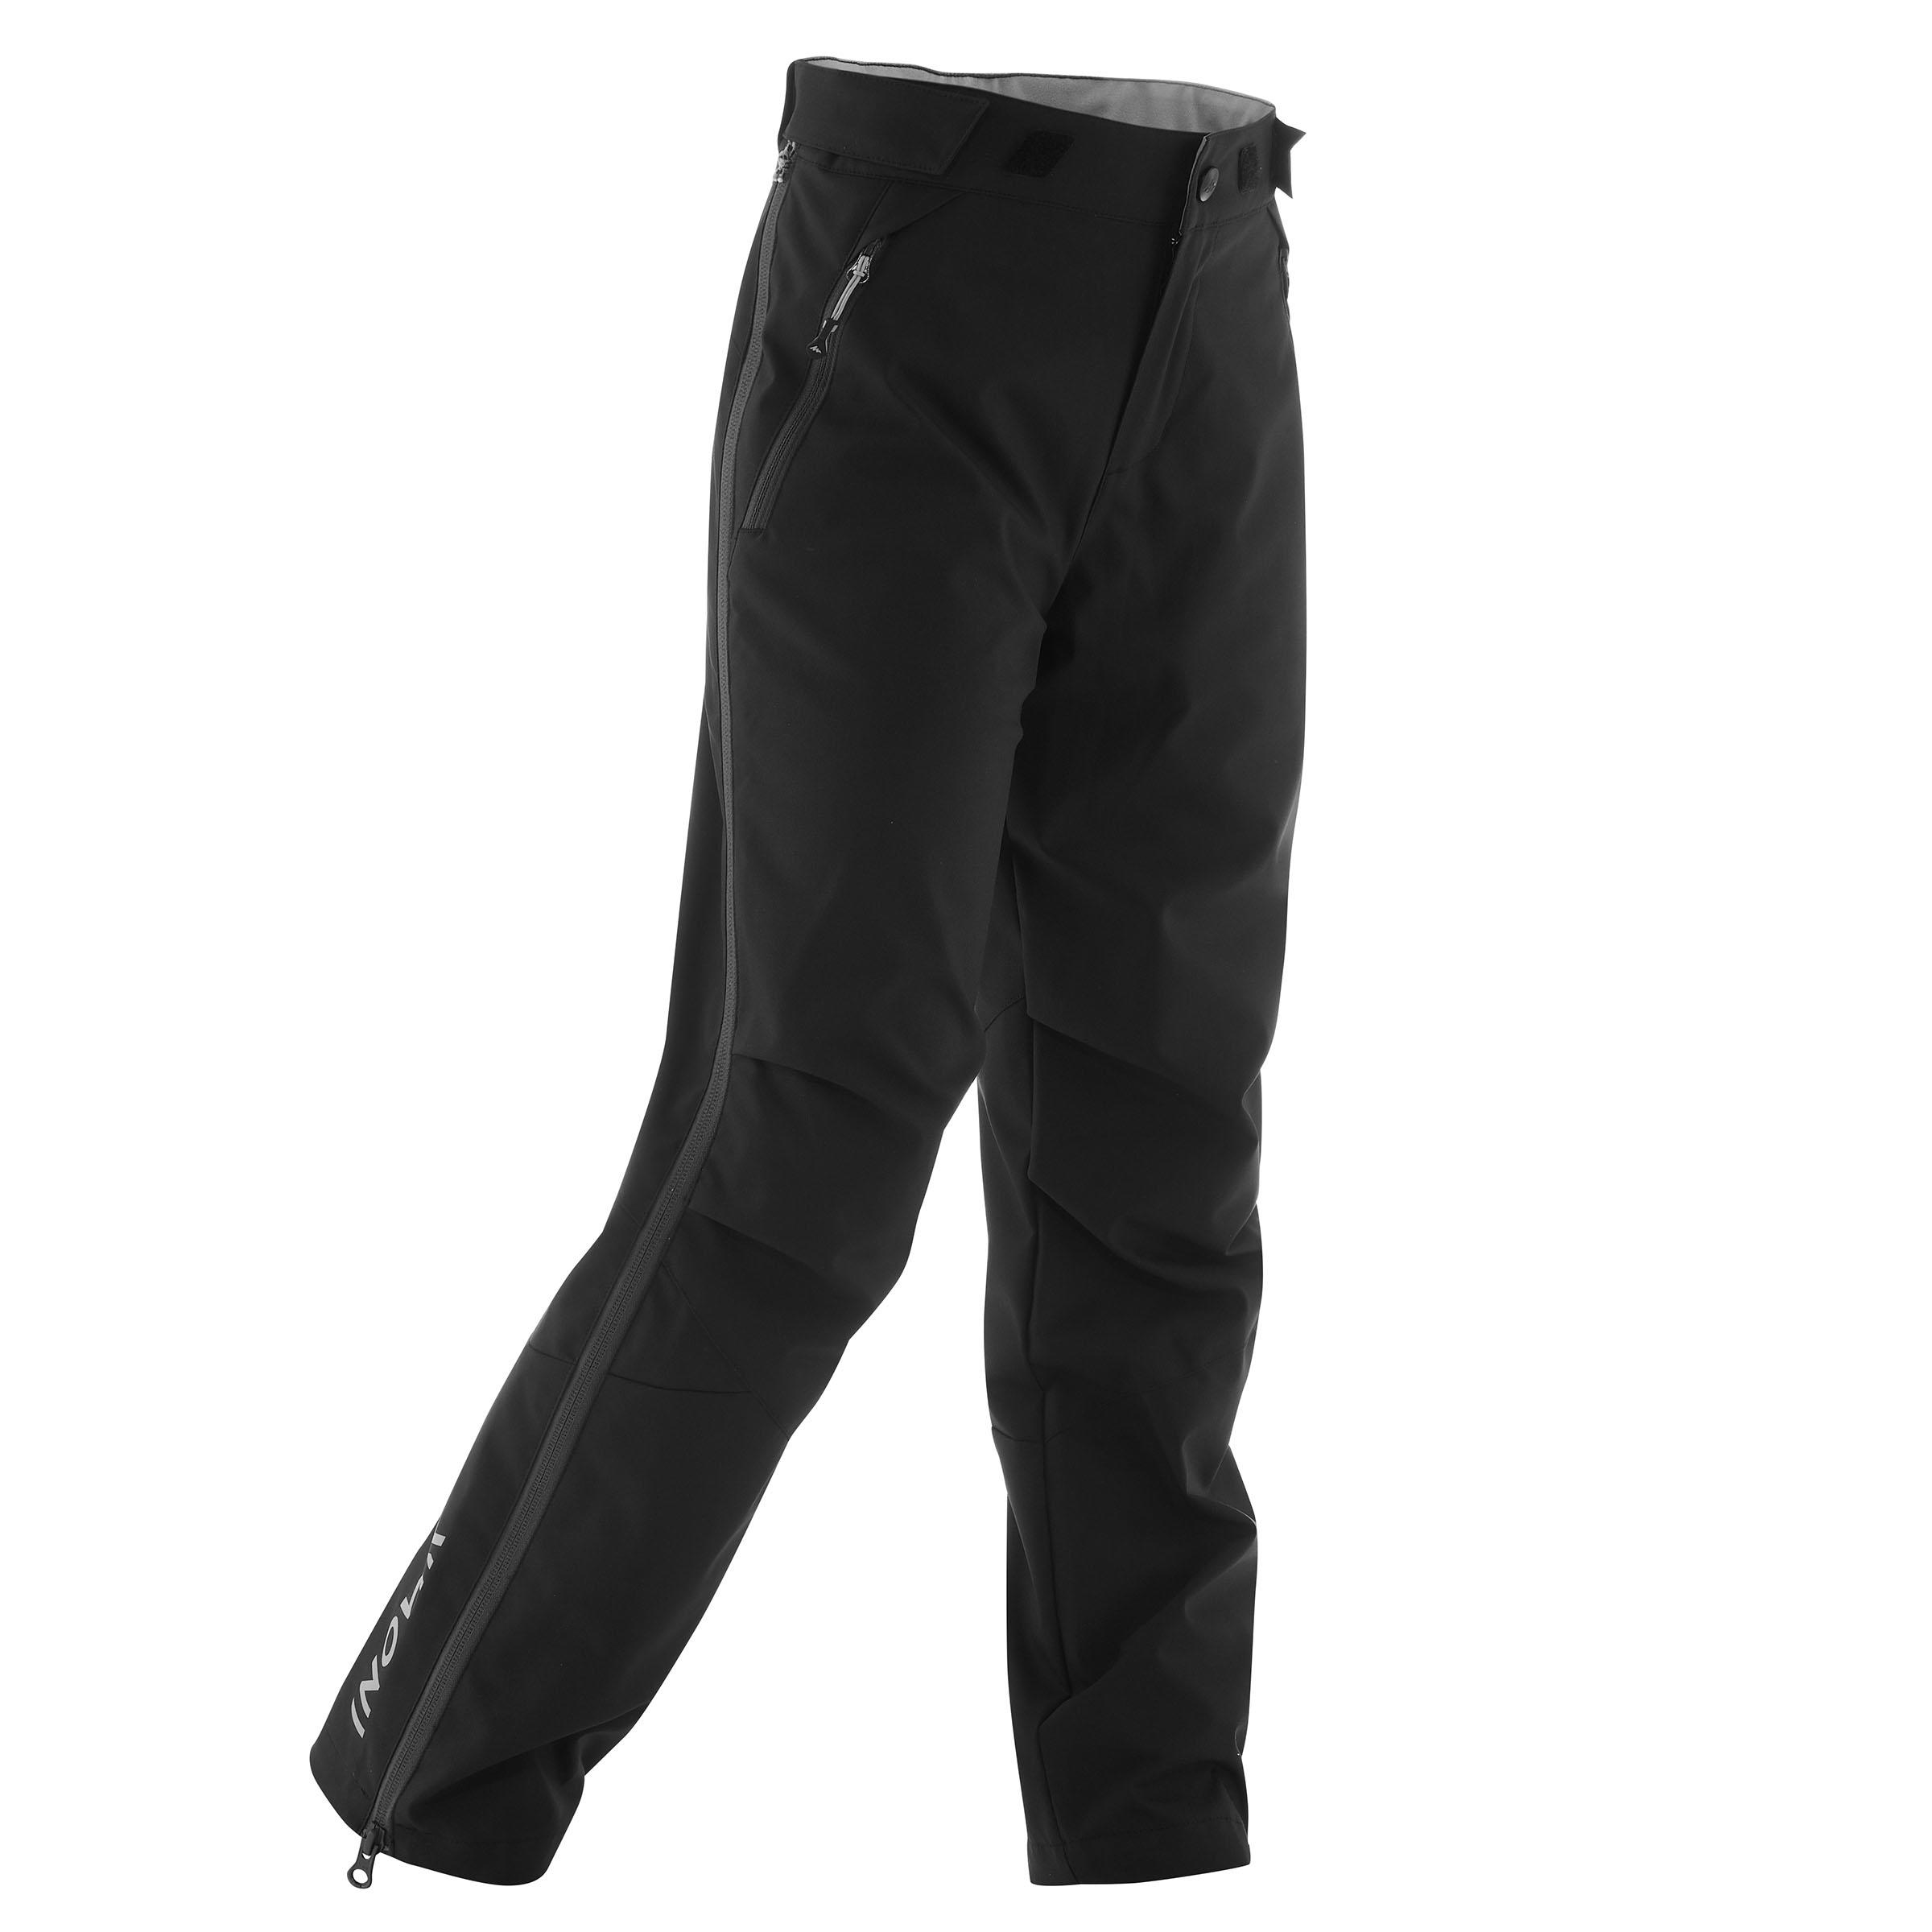 Detské vrchné nohavice xc s overp 150 na bežecké lyžovanie čierne ČIERNA 12-13 r 151-160 cm